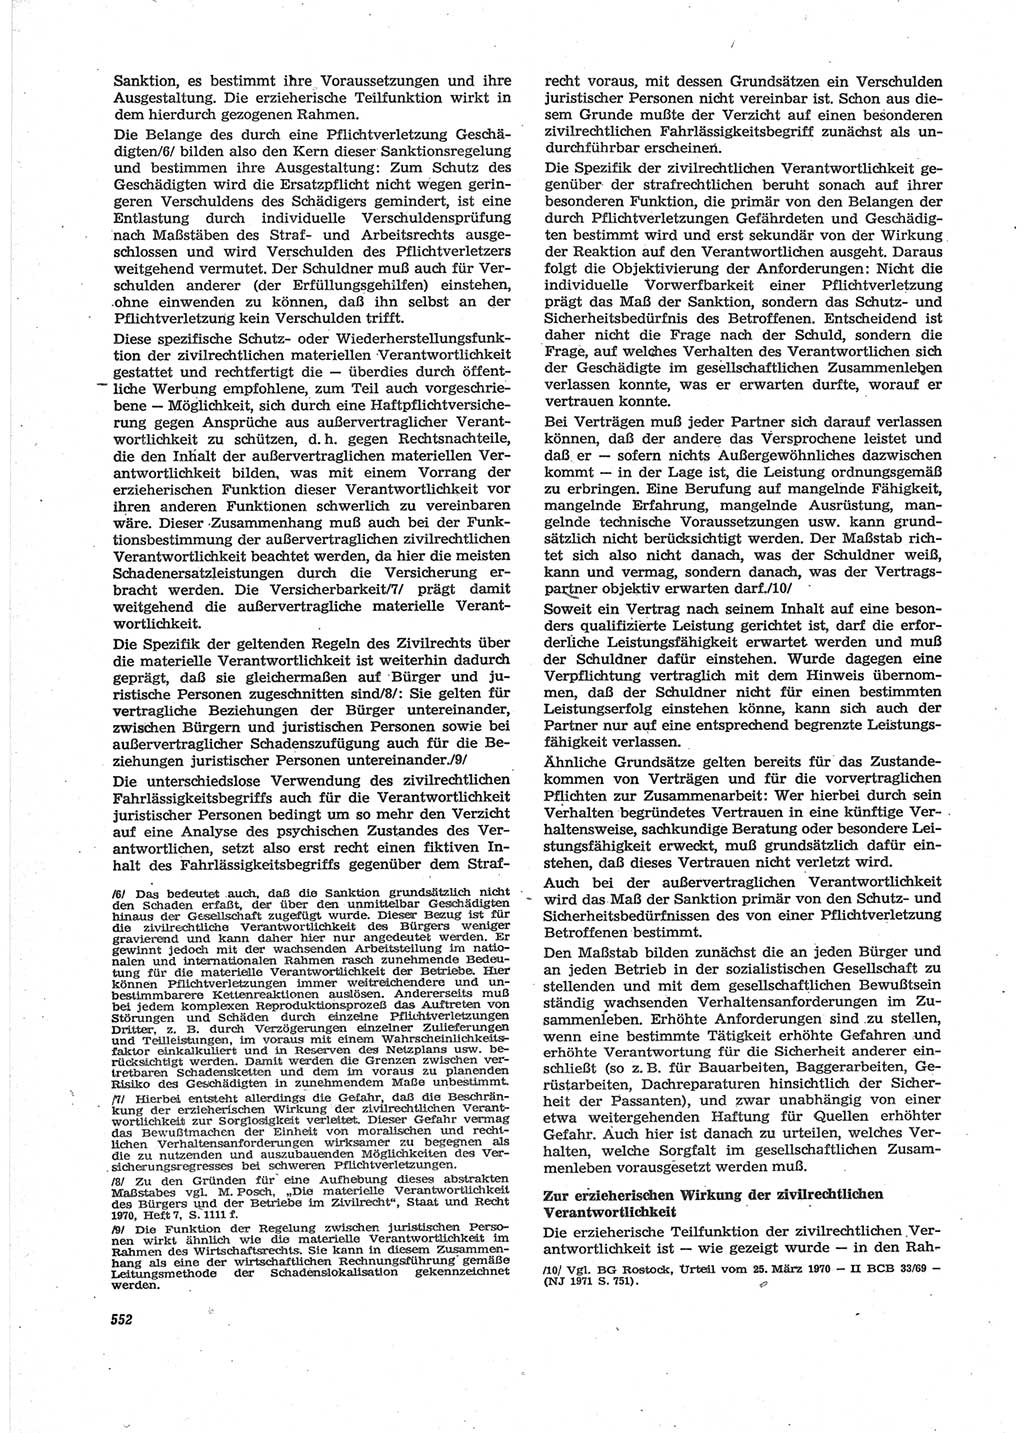 Neue Justiz (NJ), Zeitschrift für Recht und Rechtswissenschaft [Deutsche Demokratische Republik (DDR)], 28. Jahrgang 1974, Seite 552 (NJ DDR 1974, S. 552)